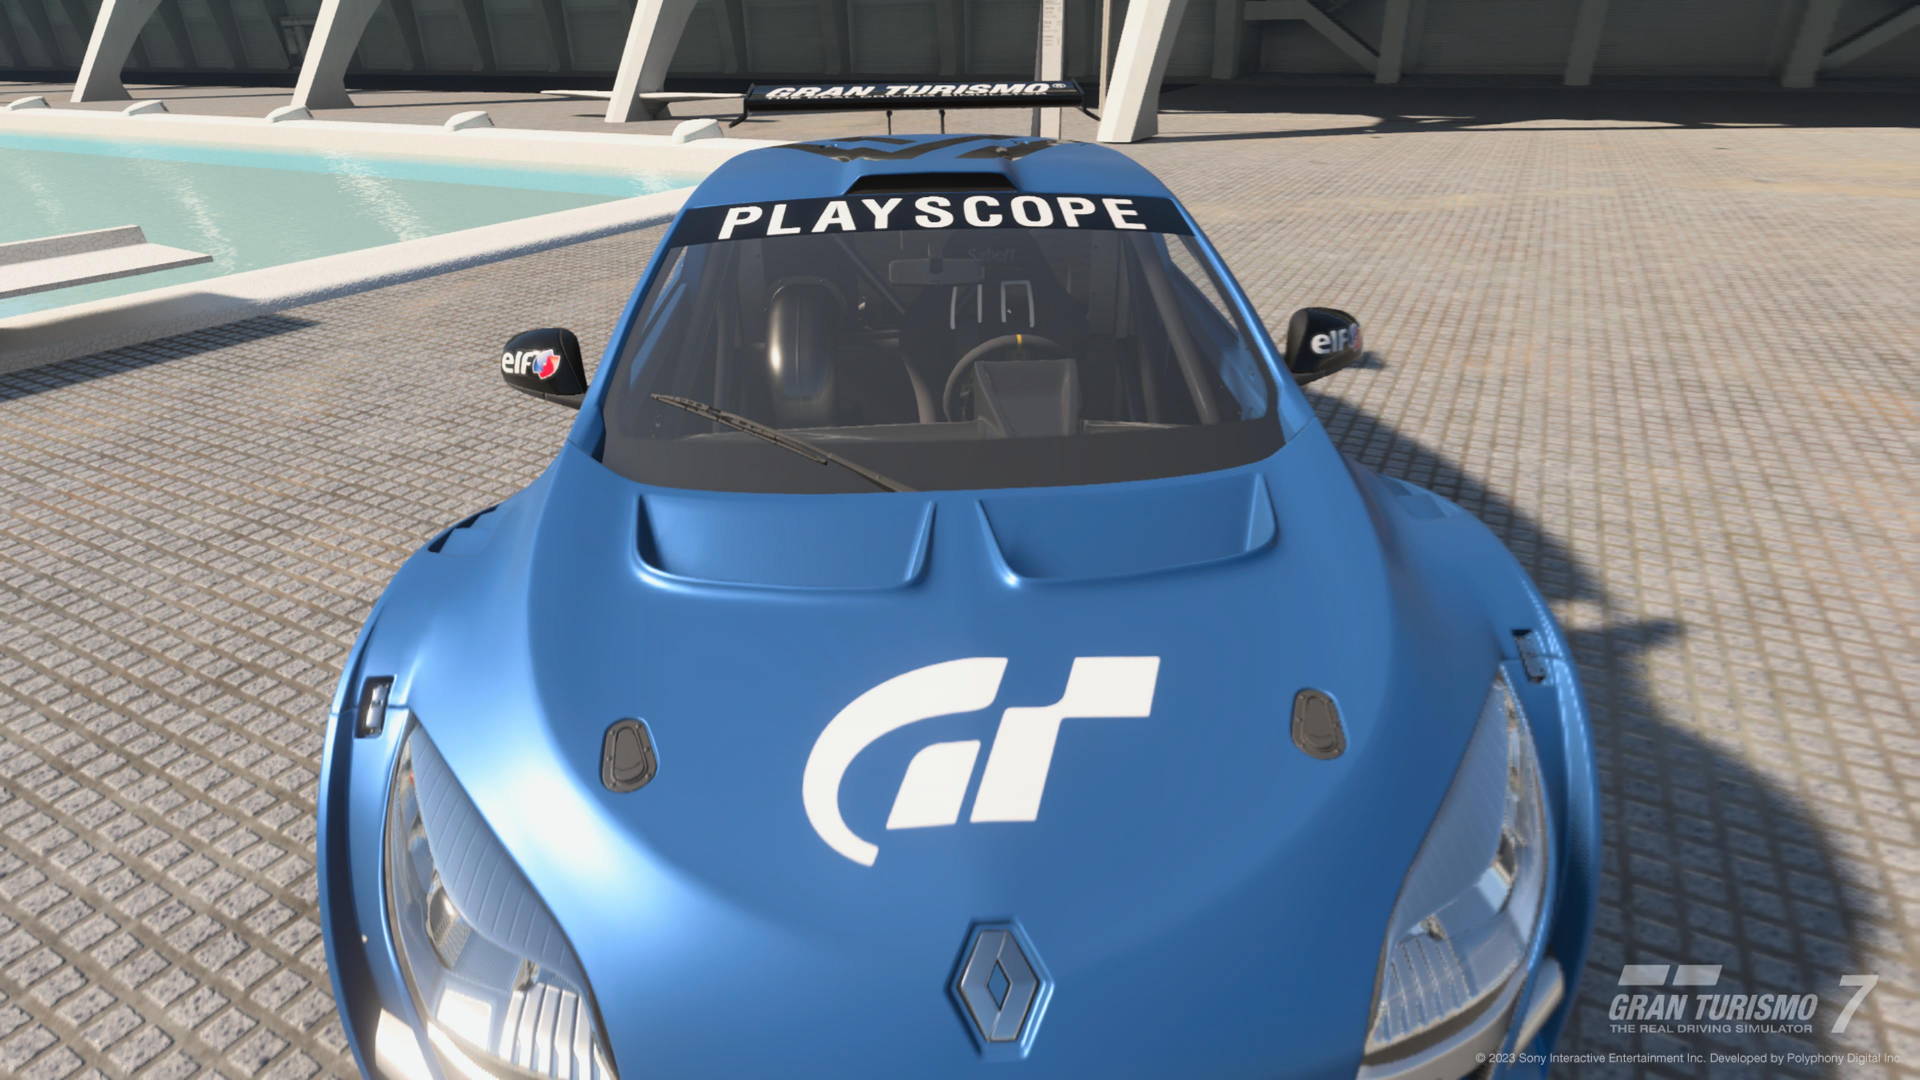 PSVR2 : Les éloges de Gran Turismo 7 sur PlayStation VR2 !